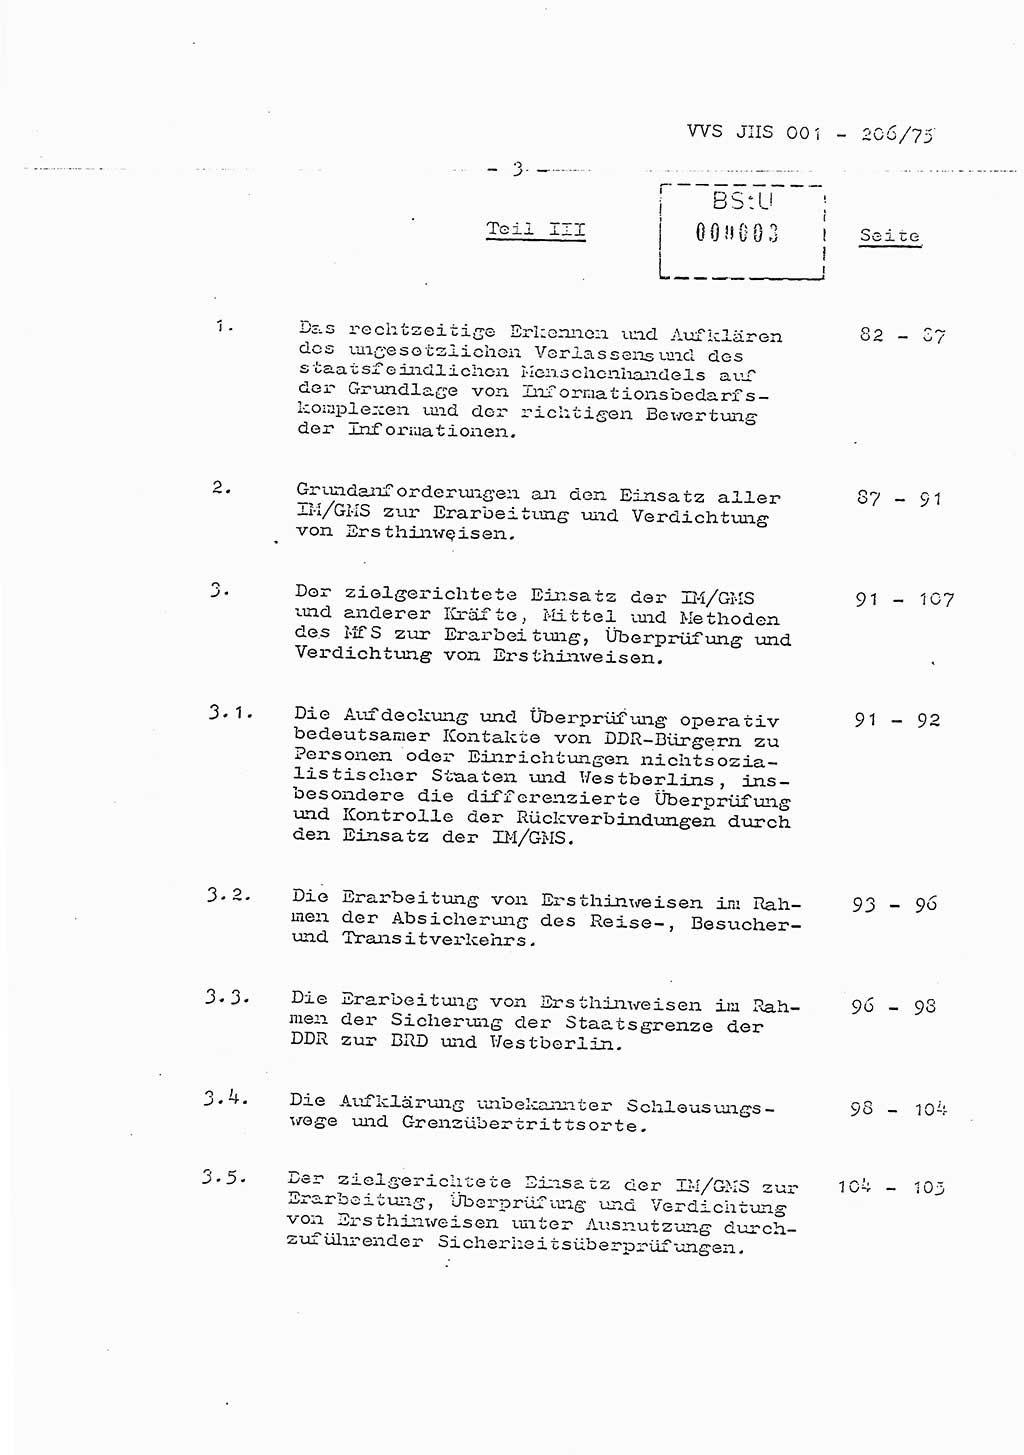 Dissertation Generalmajor Manfred Hummitzsch (Leiter der BV Leipzig), Generalmajor Heinz Fiedler (HA Ⅵ), Oberst Rolf Fister (HA Ⅸ), Ministerium für Staatssicherheit (MfS) [Deutsche Demokratische Republik (DDR)], Juristische Hochschule (JHS), Vertrauliche Verschlußsache (VVS) 001-206/75, Potsdam 1975, Seite 3 (Diss. MfS DDR JHS VVS 001-206/75 1975, S. 3)